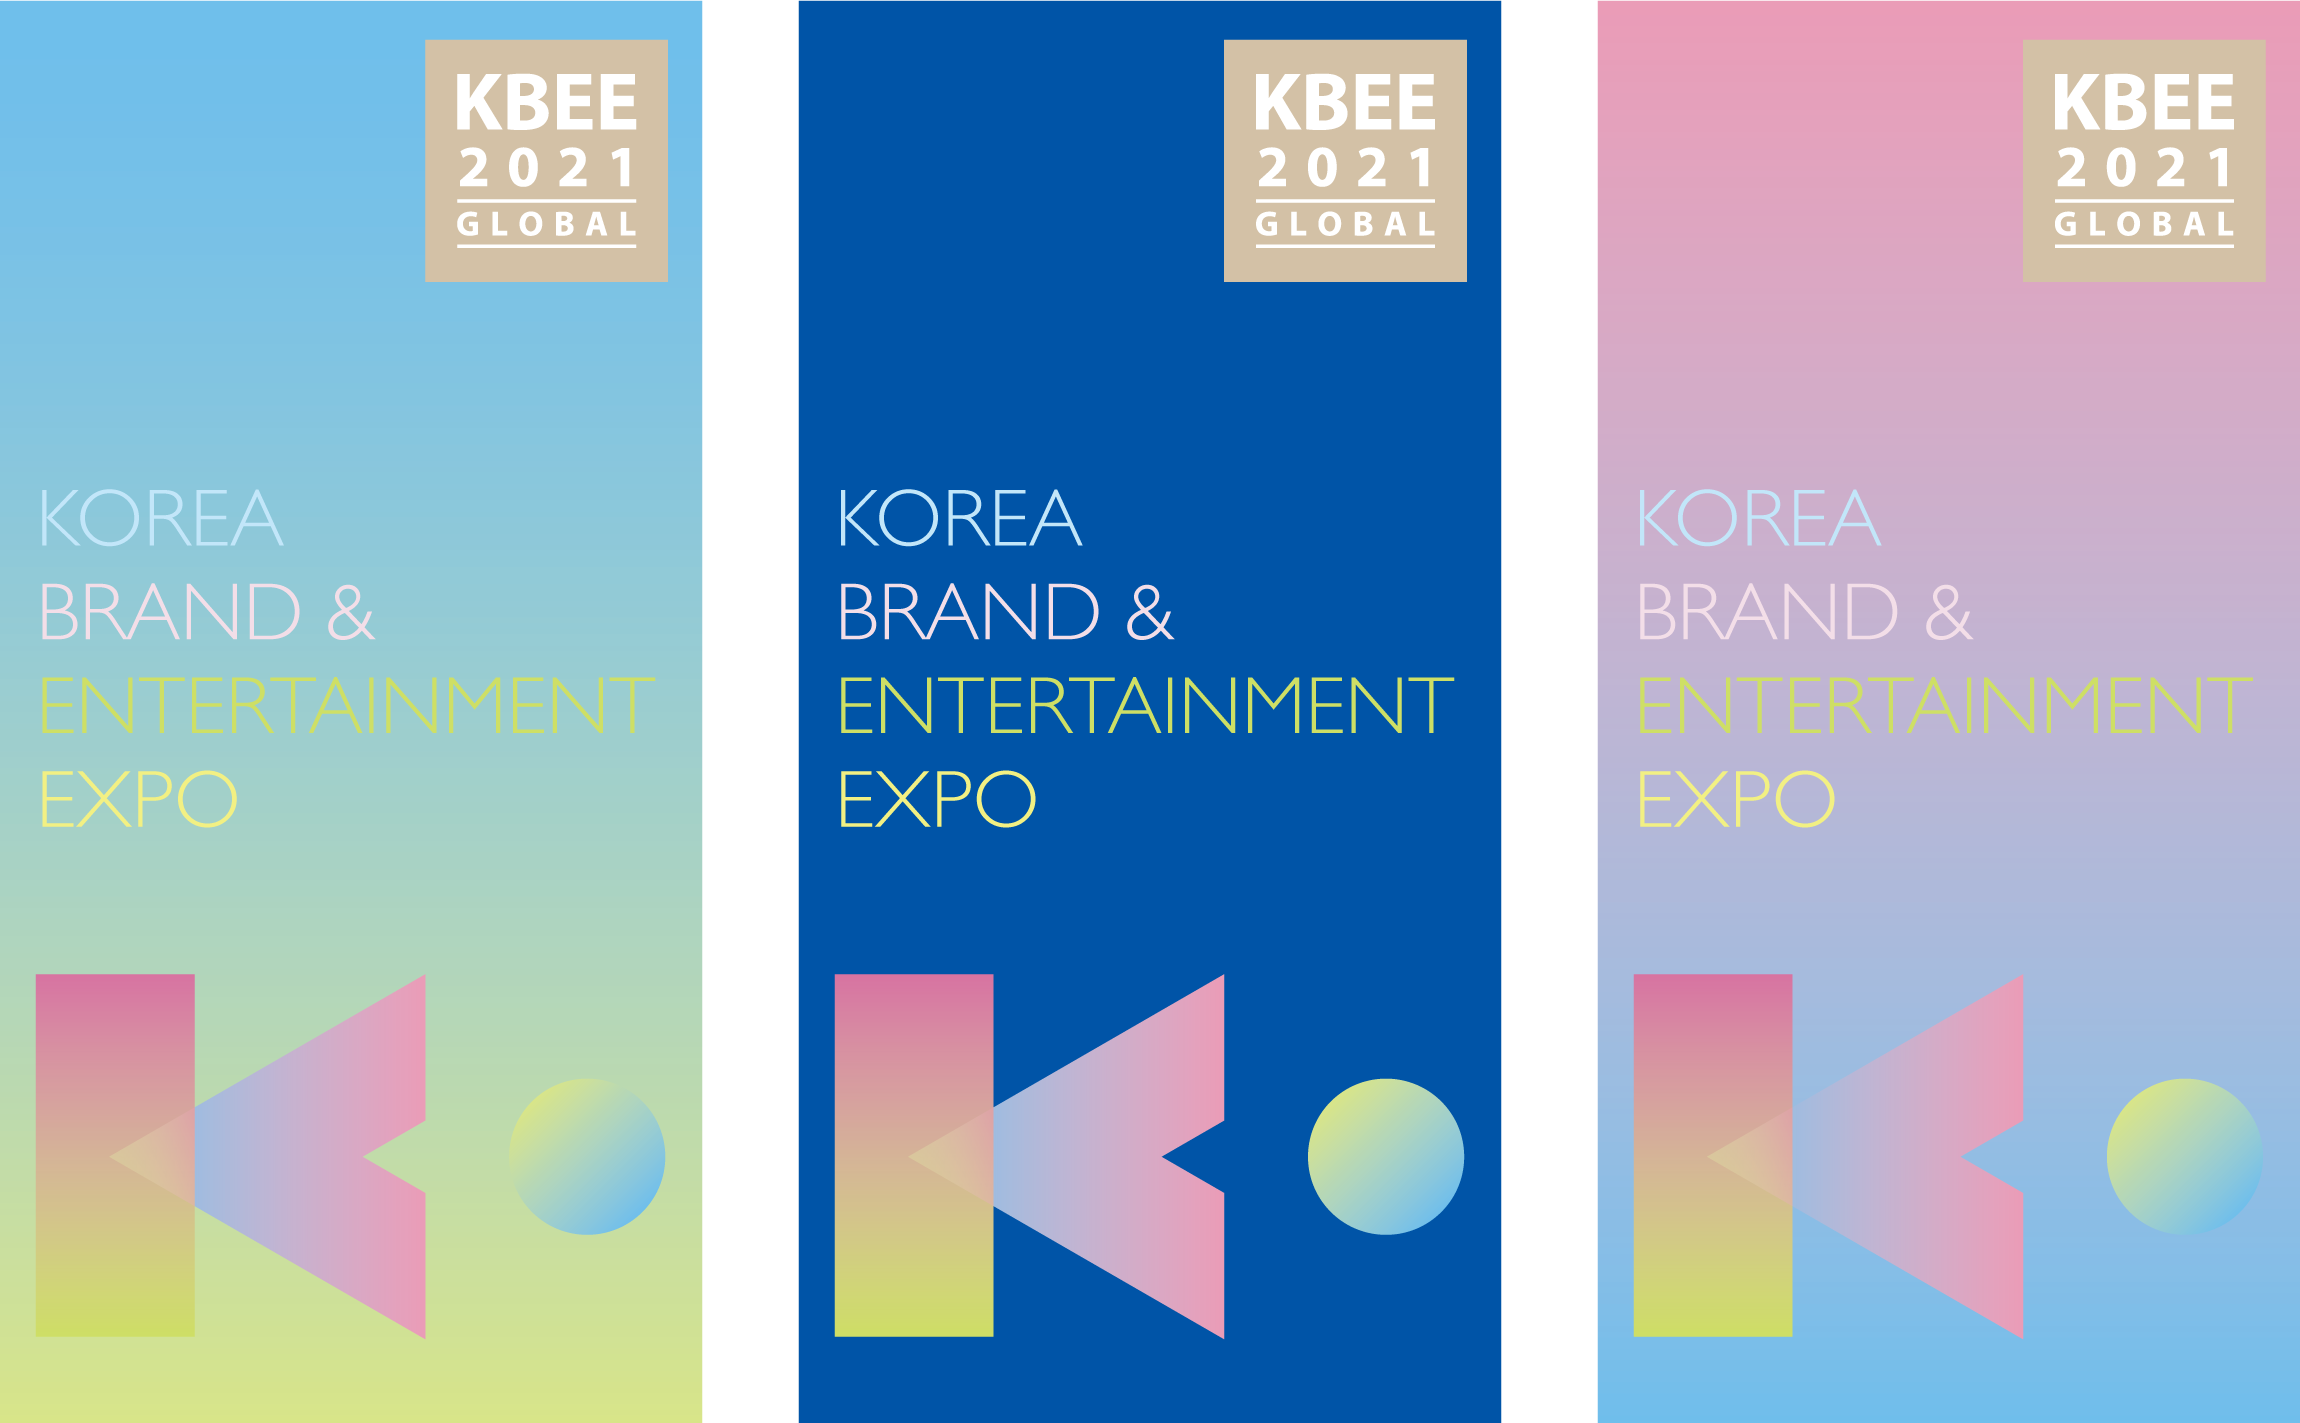 Korean Brand & Entertainment Expo  KOTRA Posters & Banners kbee-03-1.jpg